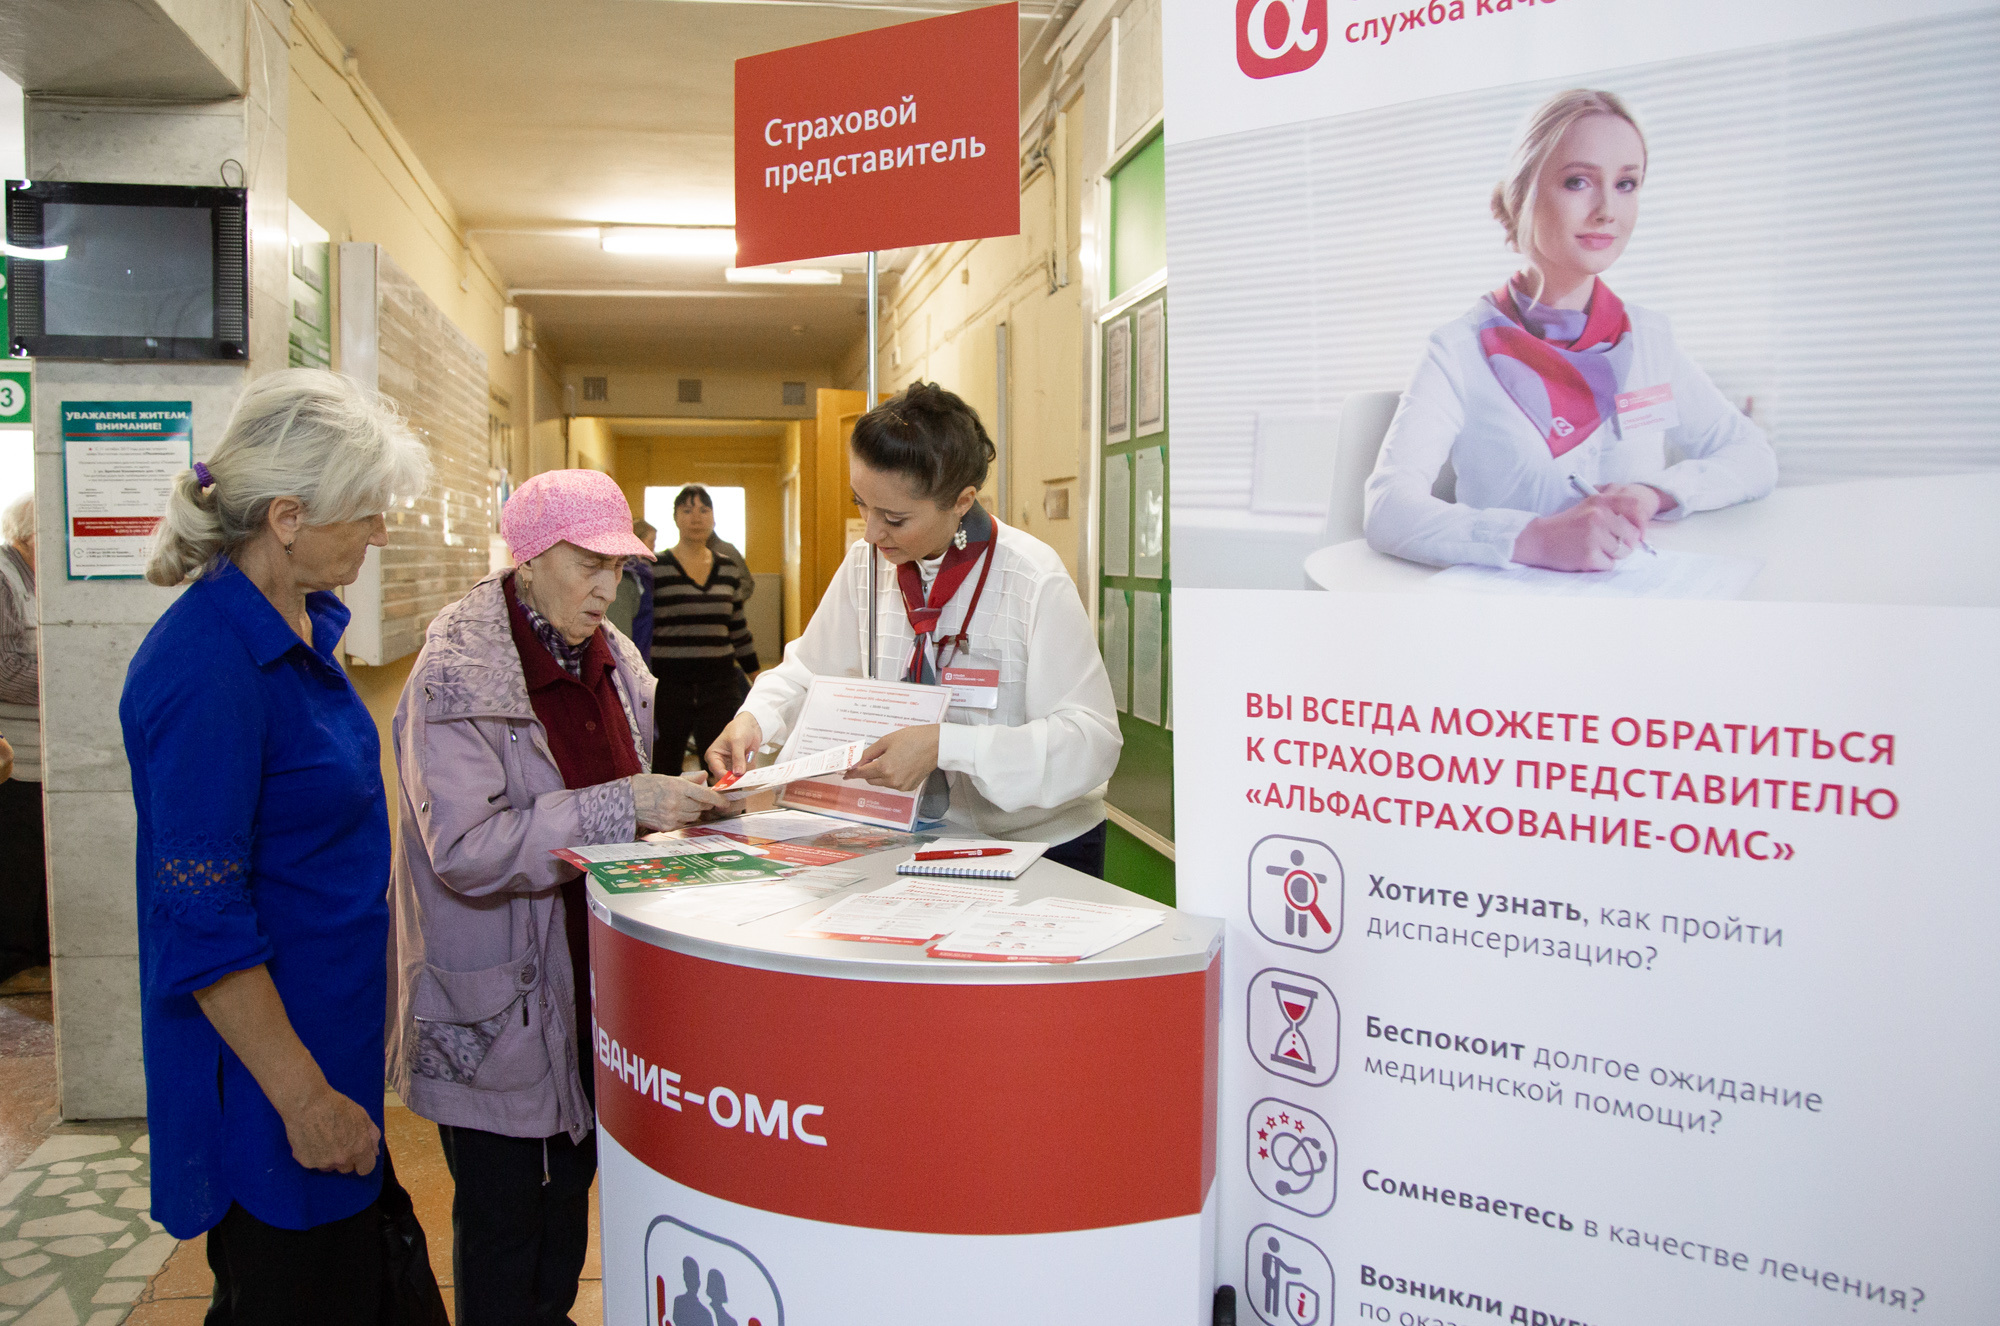 В поликлинике № 5 на Комсомольском проспекте работают представители сразу двух страховых компаний